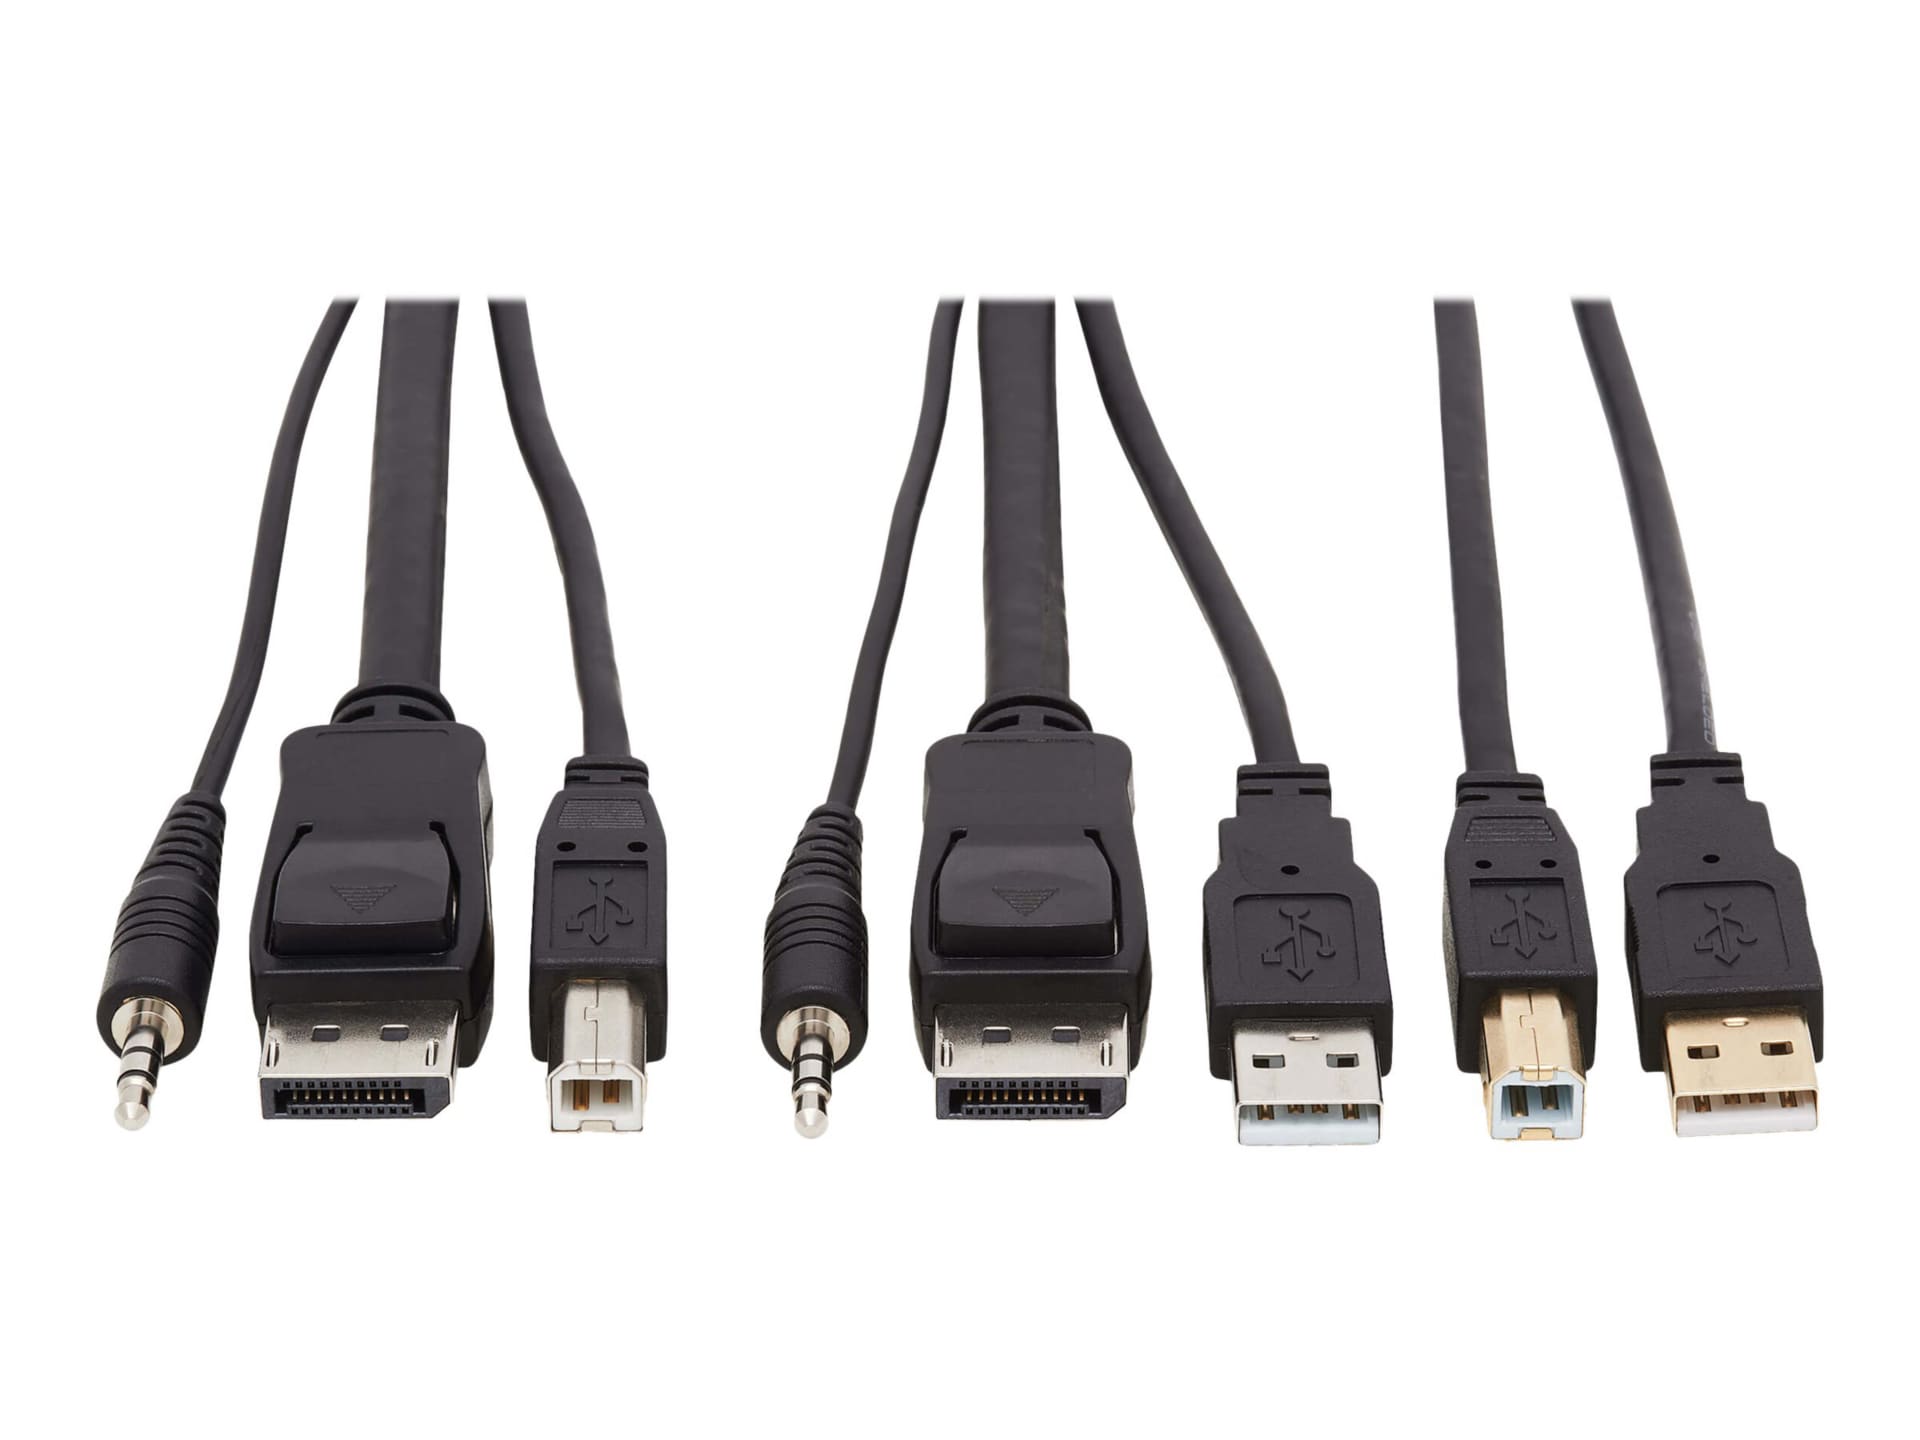 Tripp Lite DisplayPort KVM Cable Kit 4K USB 3.5mm Audio 3xM/3xM USB MM 10ft - video / USB / audio cable kit - 10 ft